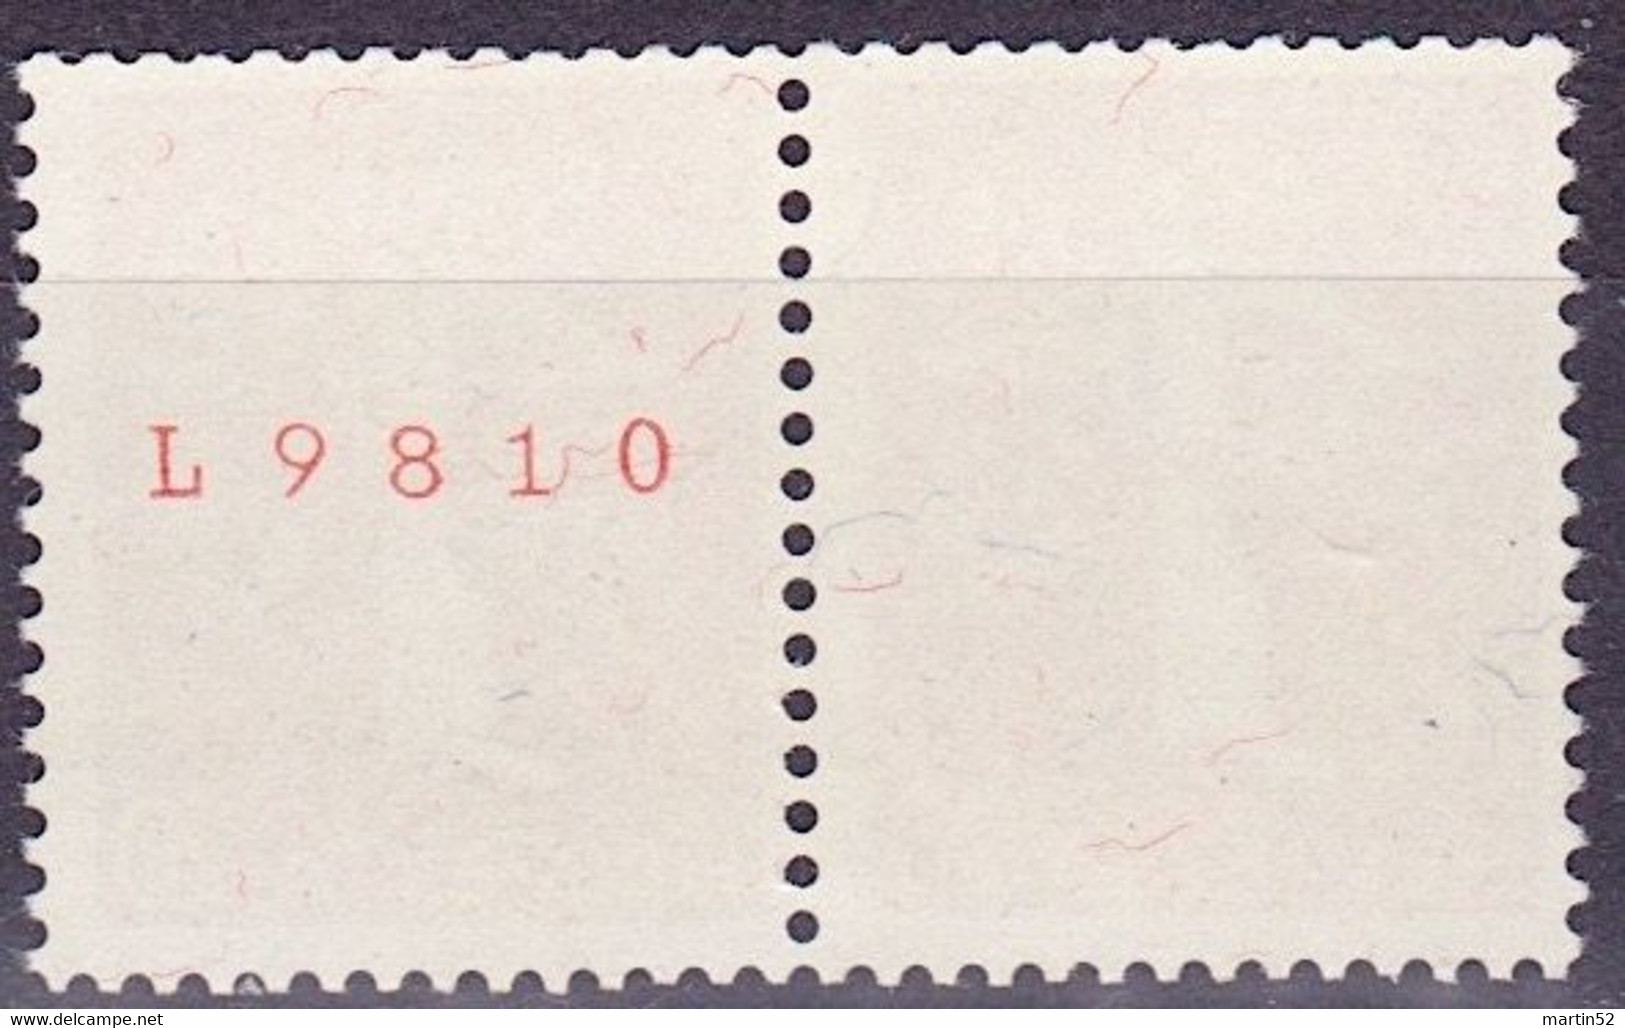 Schweiz Suisse 1939: Zusammendruck Se-tenant Zu Z27e Mi W21 ** Mit Nr. Avec N° L9810 Postfrisch MNH (Zumstein CHF 30.00) - Francobolli In Bobina